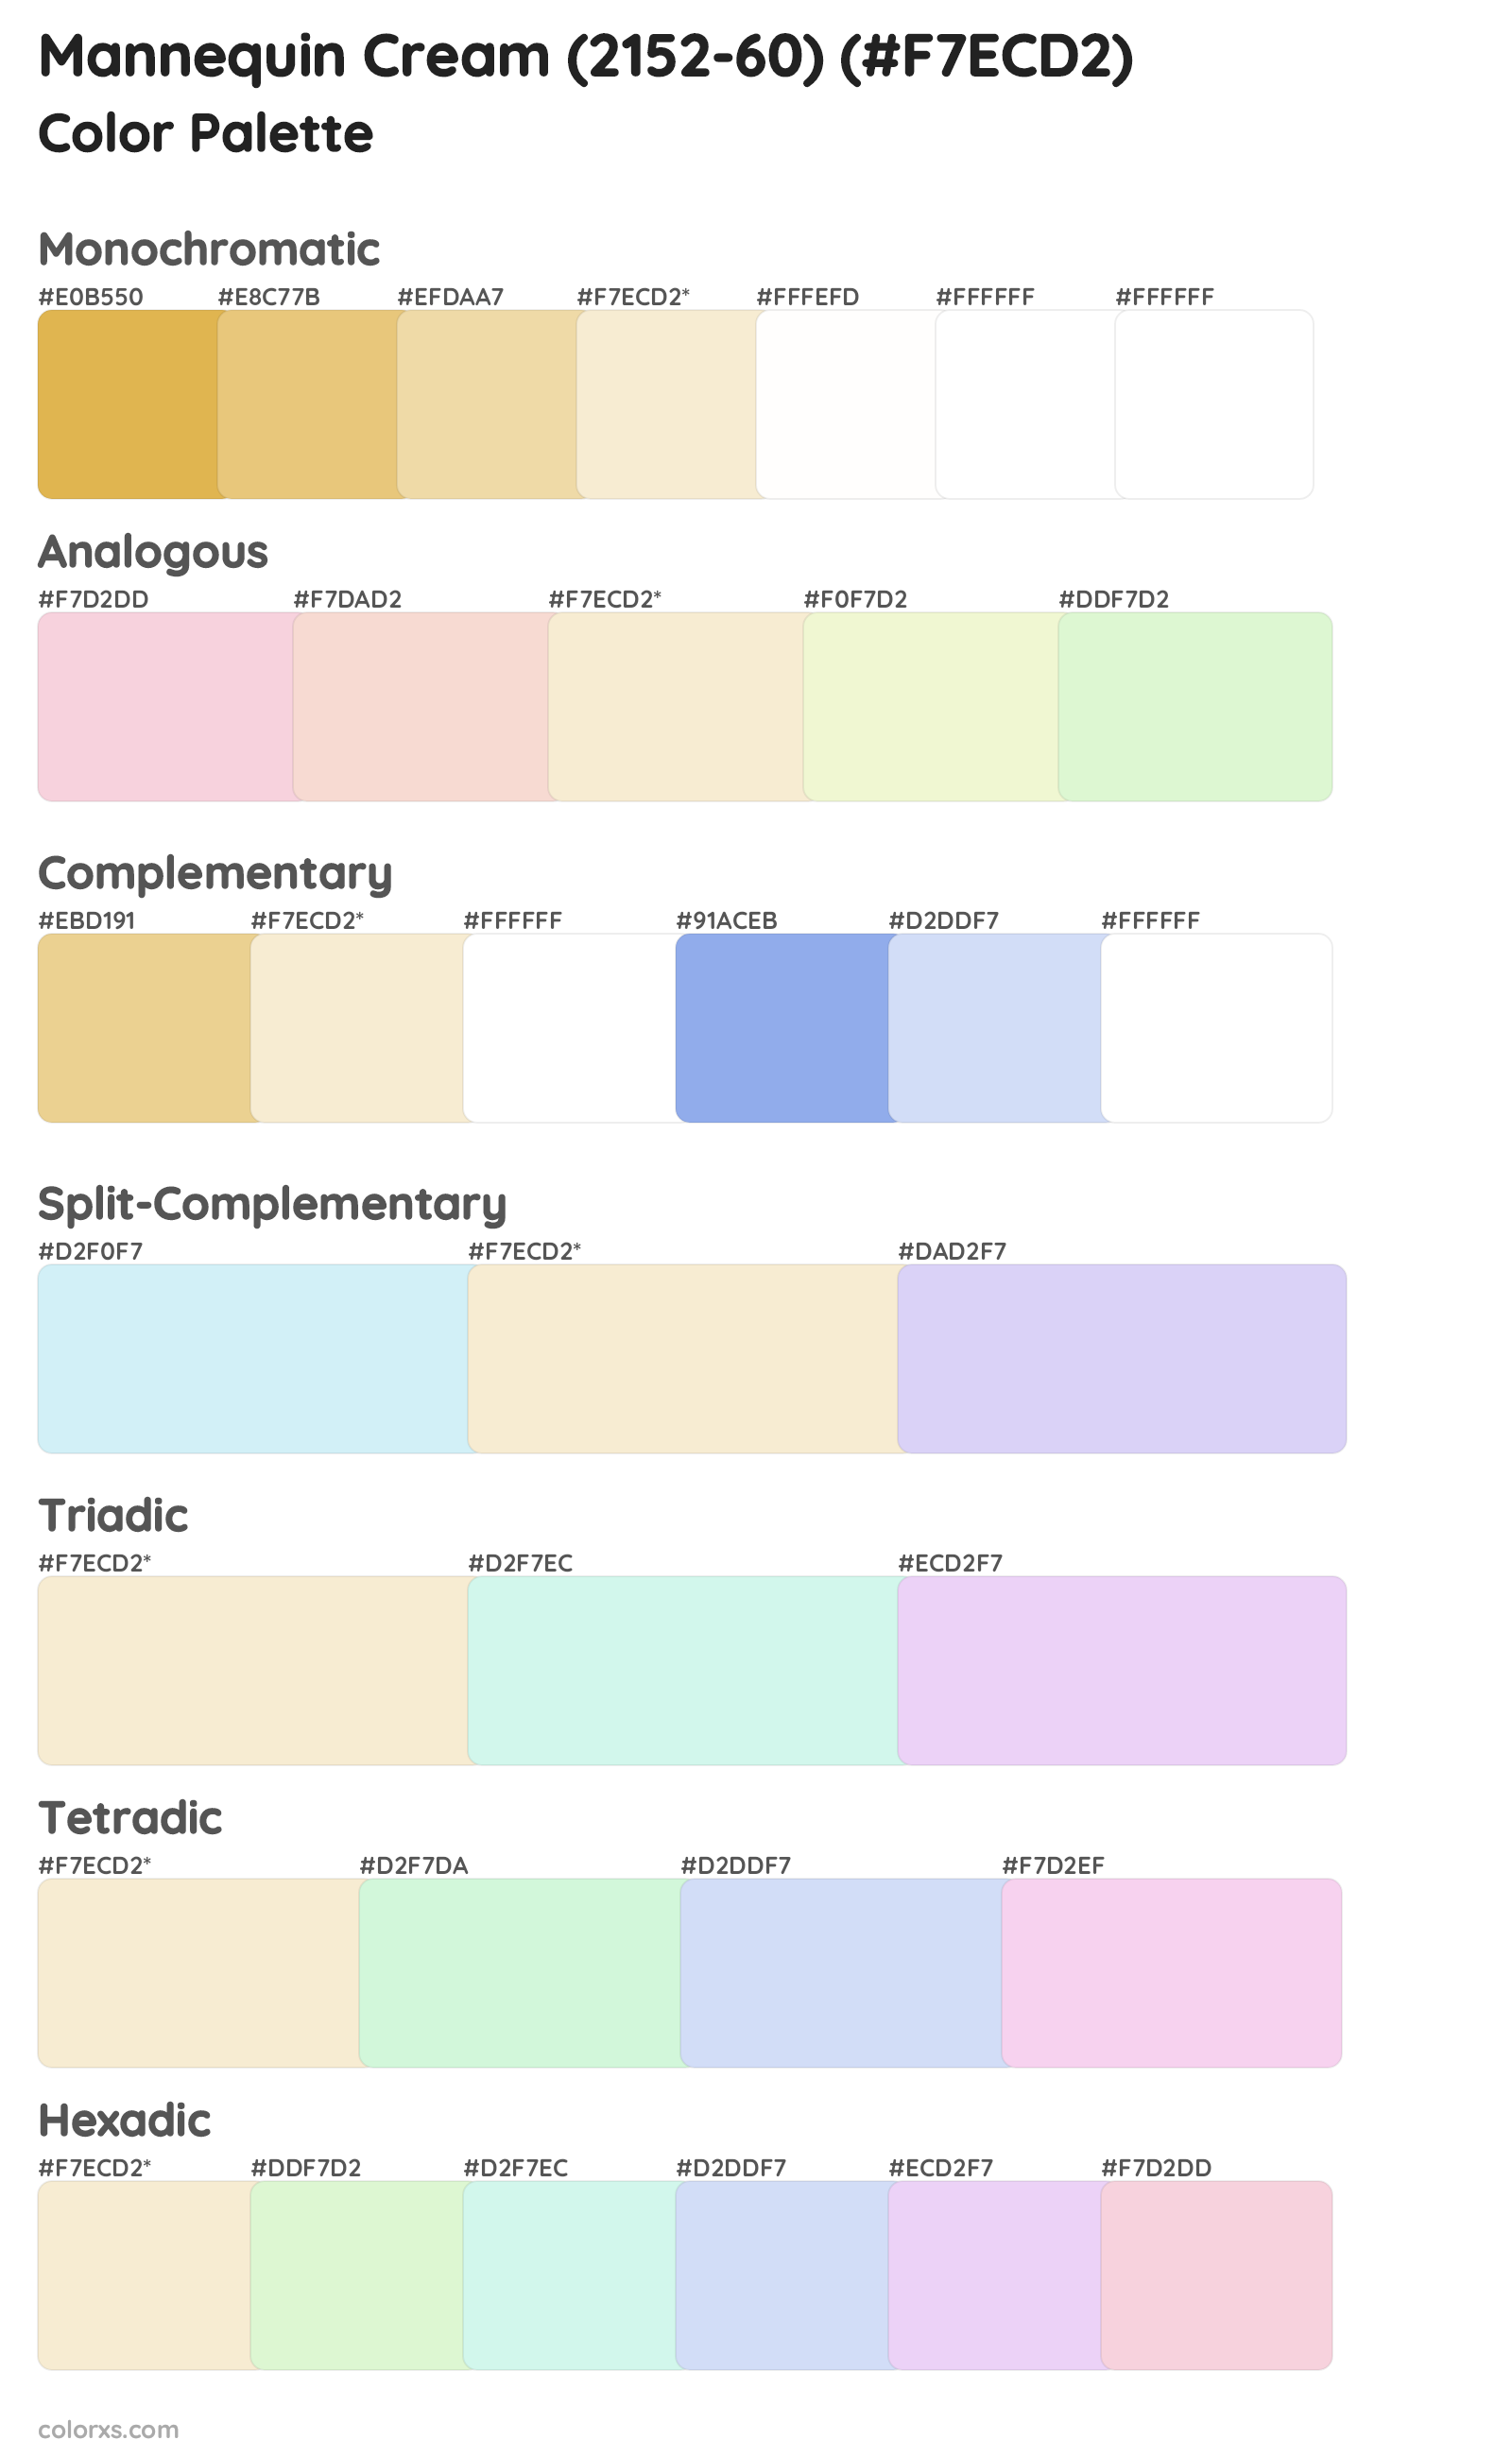 Mannequin Cream (2152-60) Color Scheme Palettes